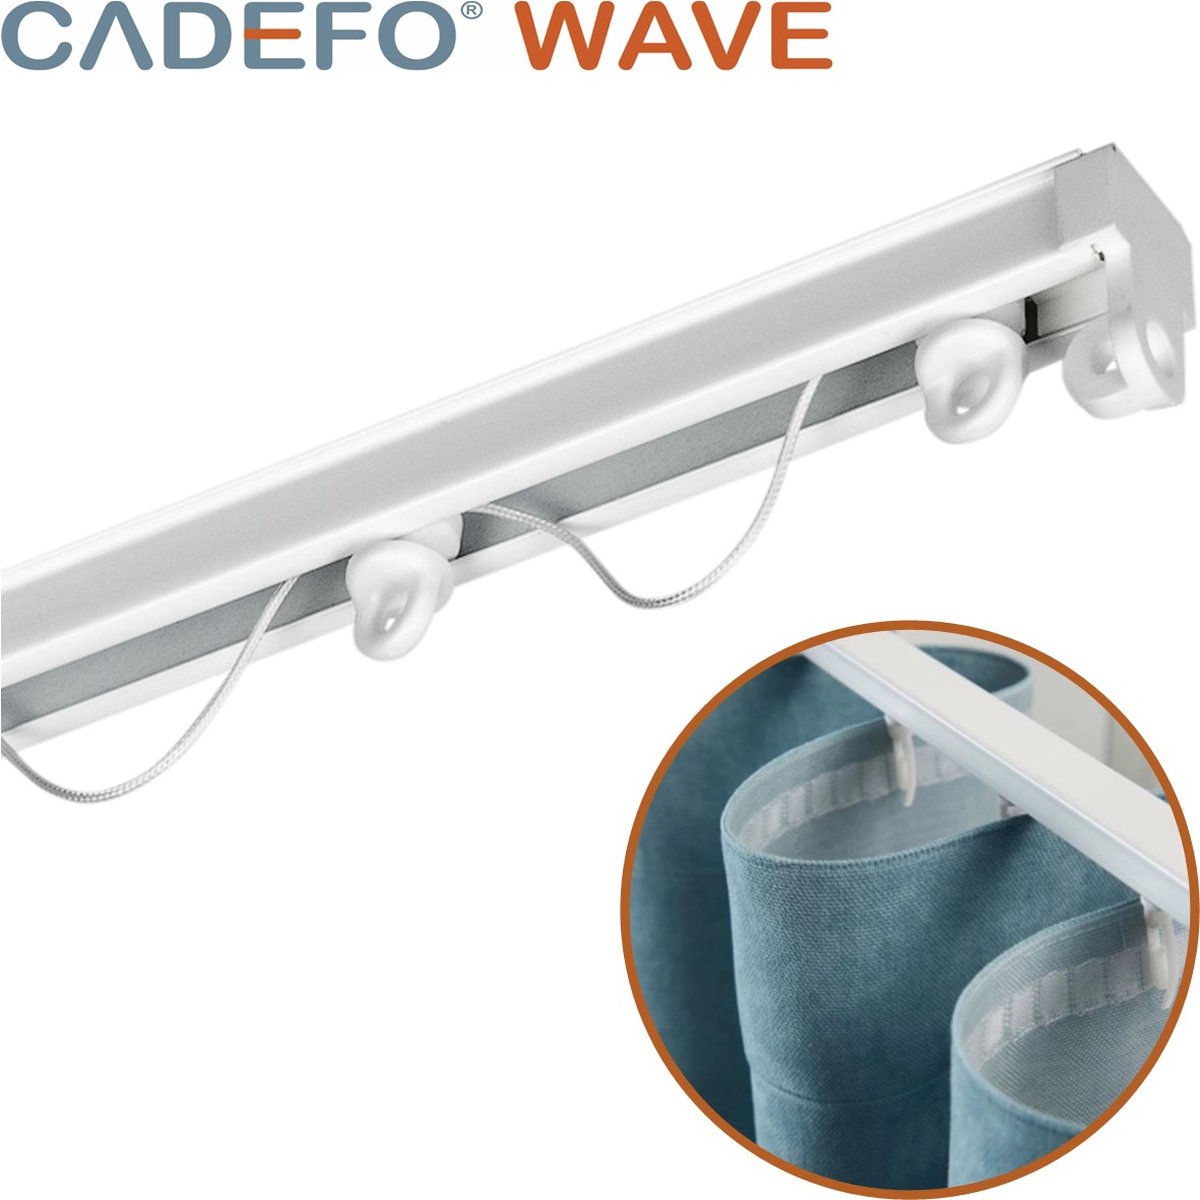 CADEFO WAVE (151 - 200 cm) Gordijnrails - Compleet op maat! - UIT 1 STUK - Leverbaar tot 6 meter - Plafondbevestiging - Lengte 159 cm